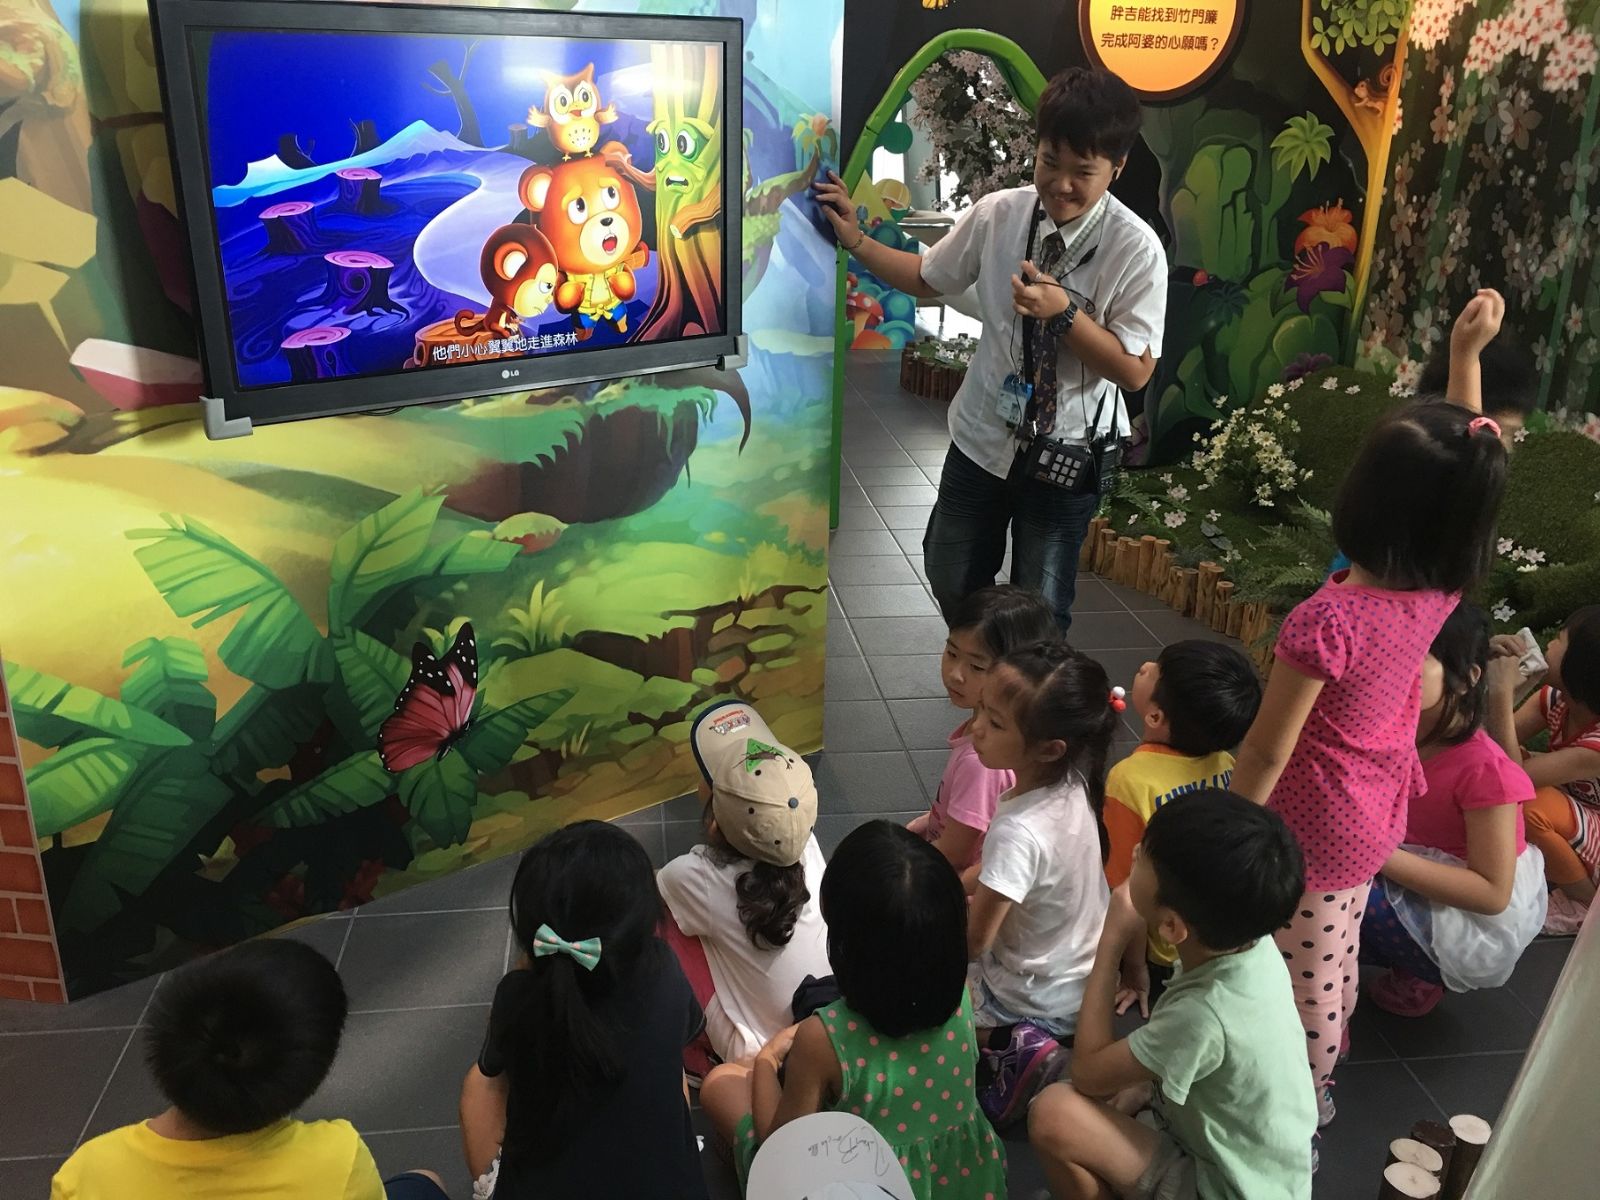 圖說：導覽人員親切地帶領小朋友們認識《阿吉牯的魔幻旅程》特展，連結繪本故事情節和展場實境，讓孩子們實際體驗繪本故事屋的魅力。